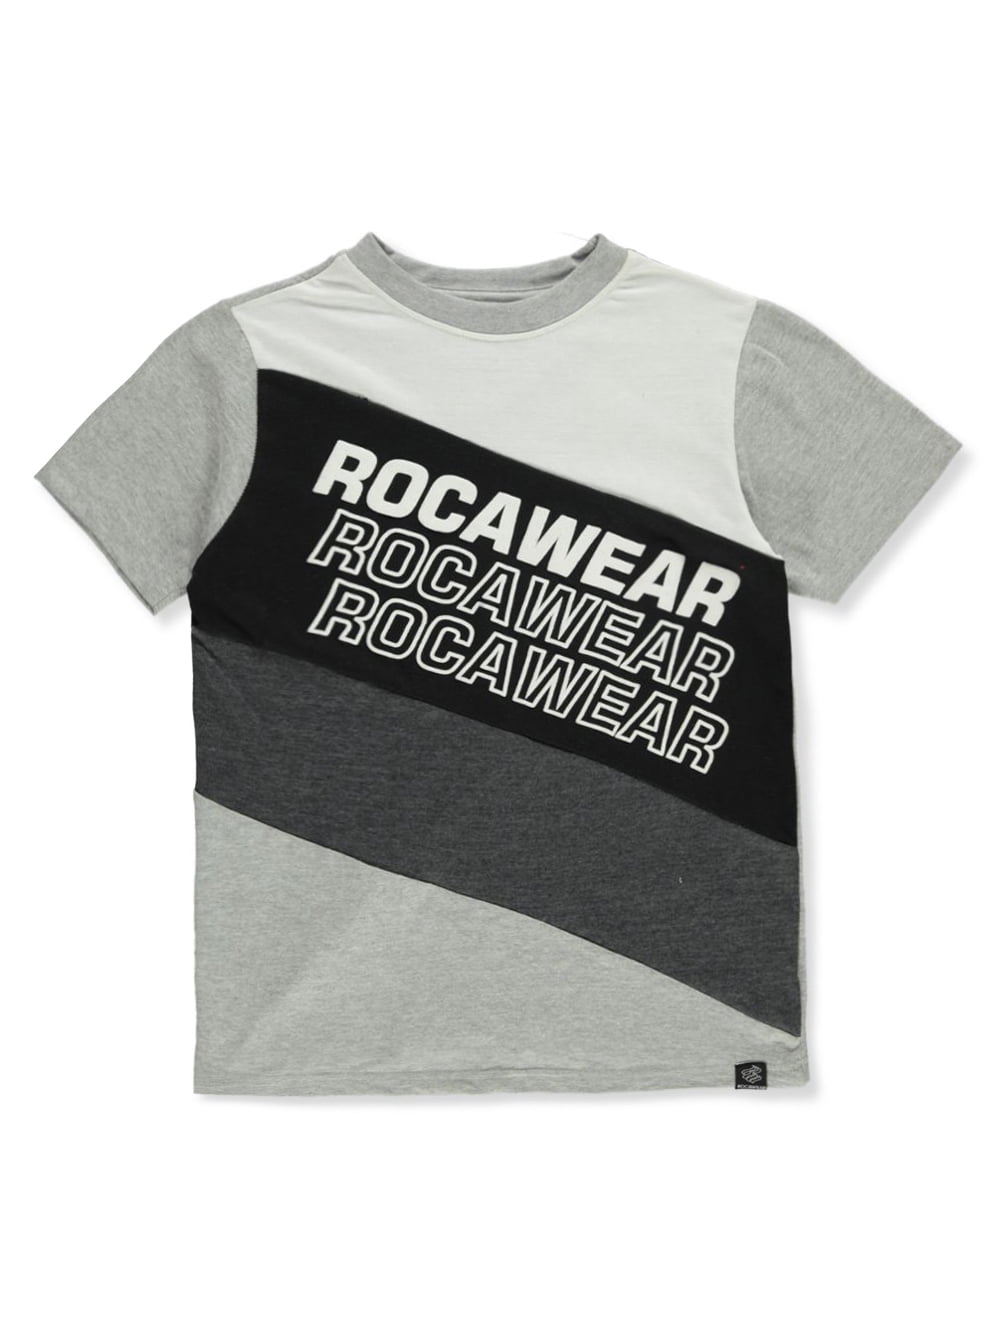 Rocawear Boys' Stripe T-Shirt - gray, 10 - 12 (Big Boys) - Walmart.com